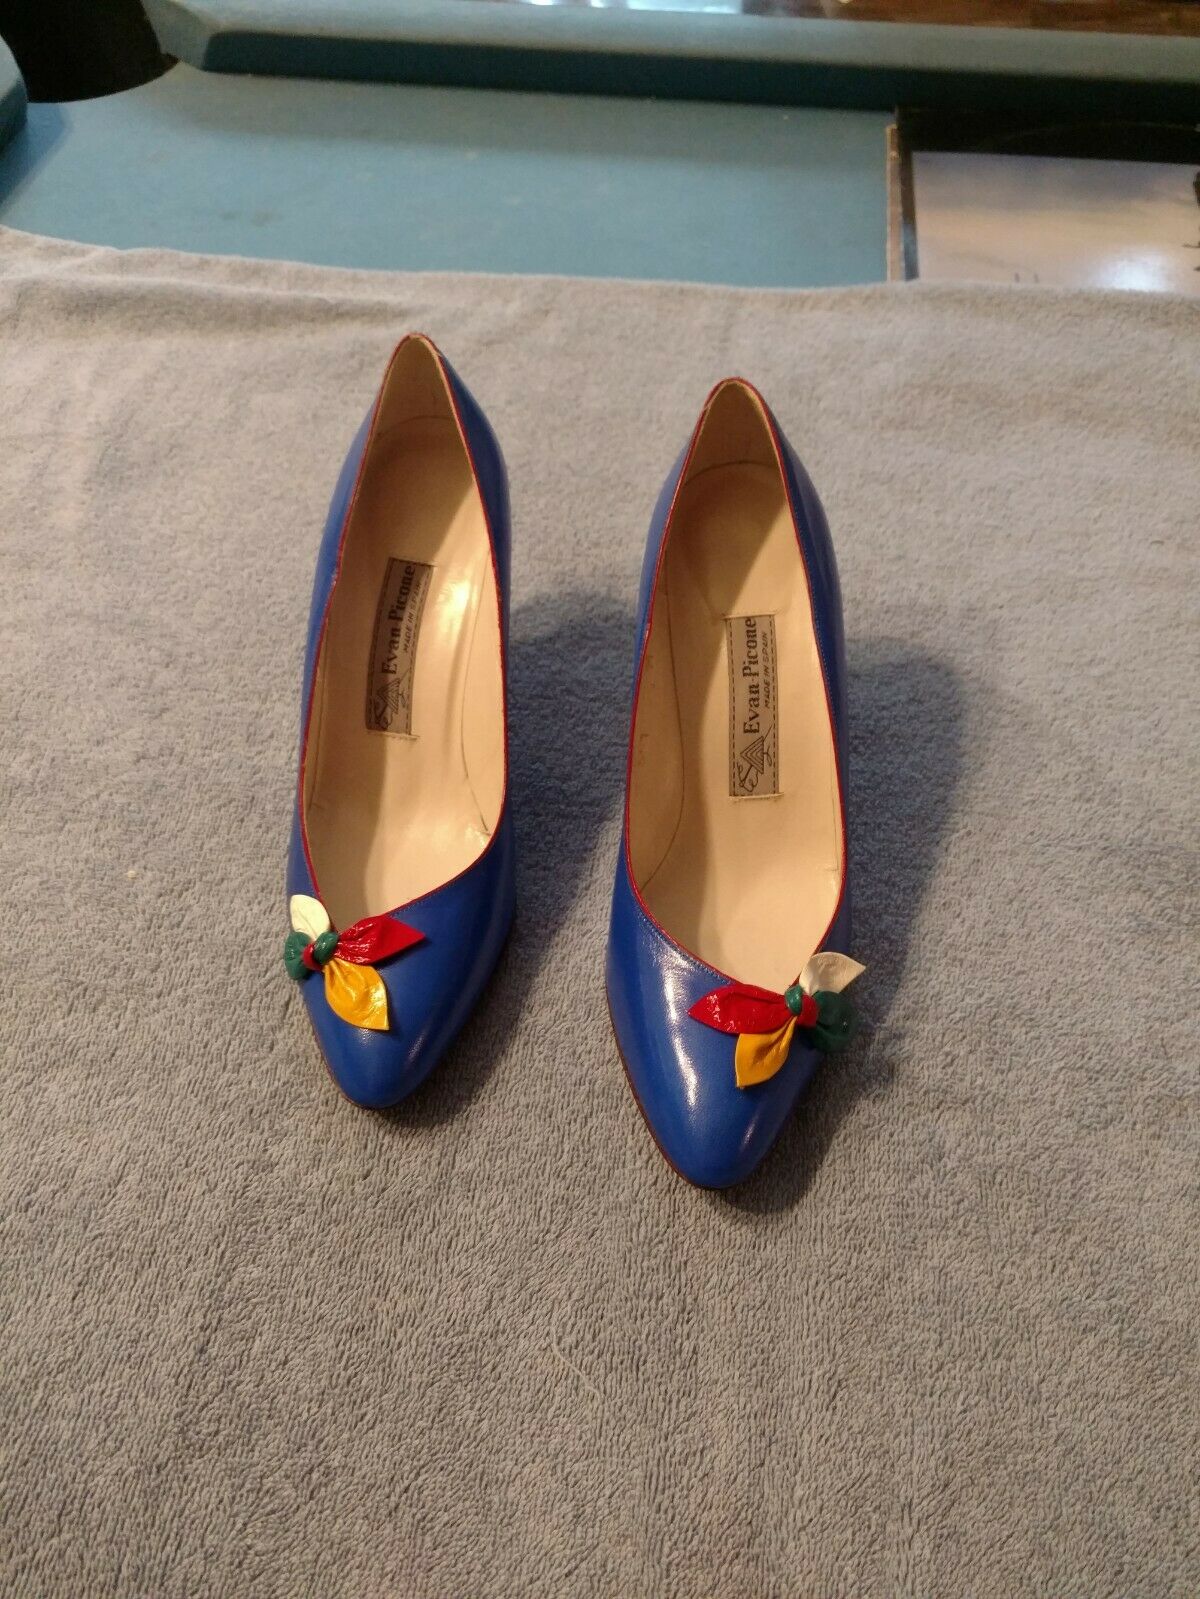 Vintage Evan Picone Womens Royal Blue Pump Dress Shoes 7 1/2 M Excellent cond